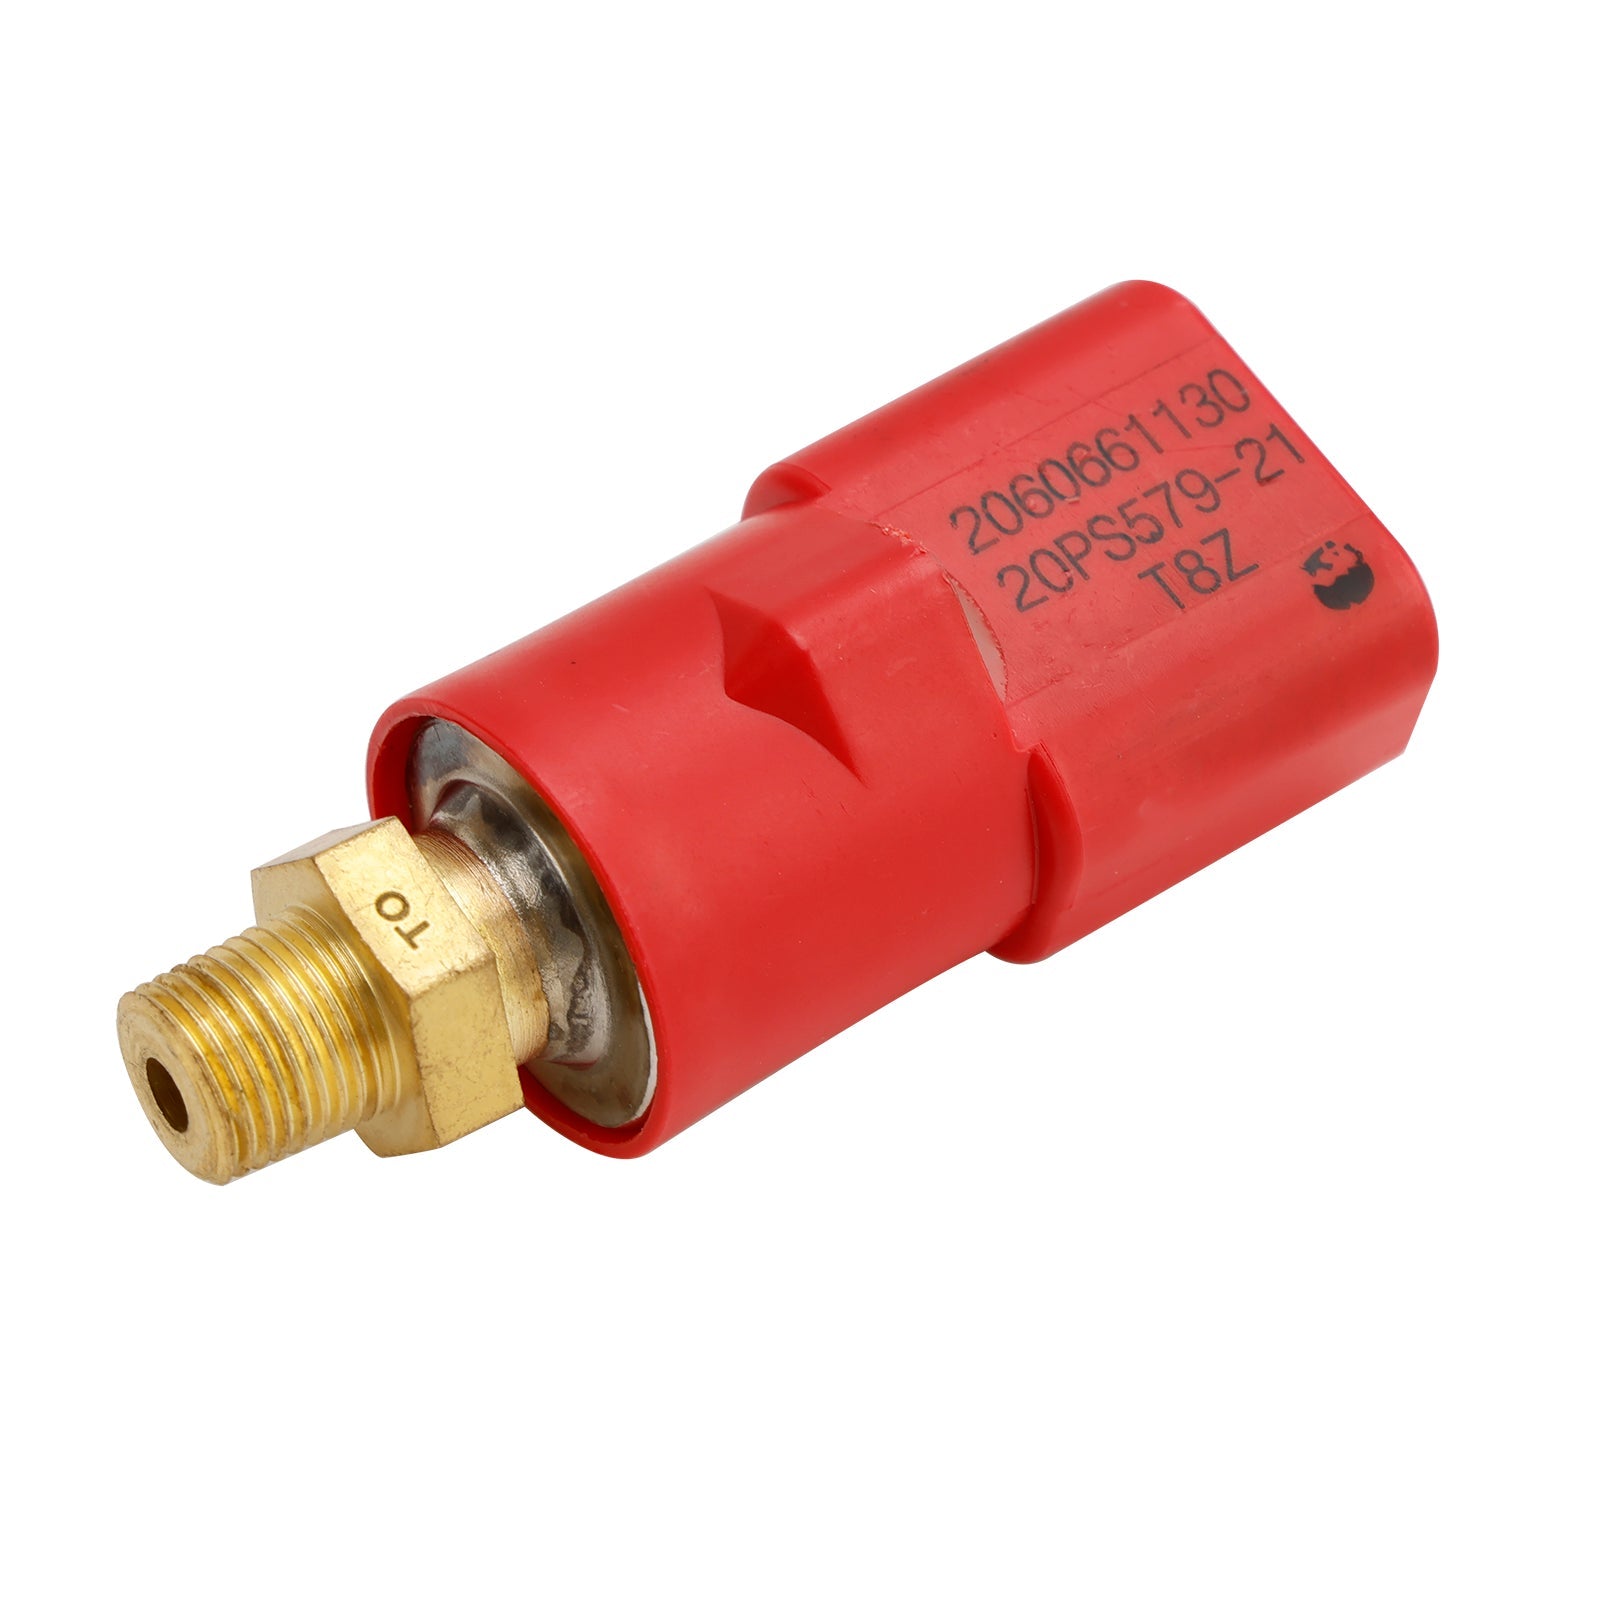 Interruptor de presión 20Y-06-61130 20PS579-21 para Komatsu PC200-7 PC300-7 PC120-7